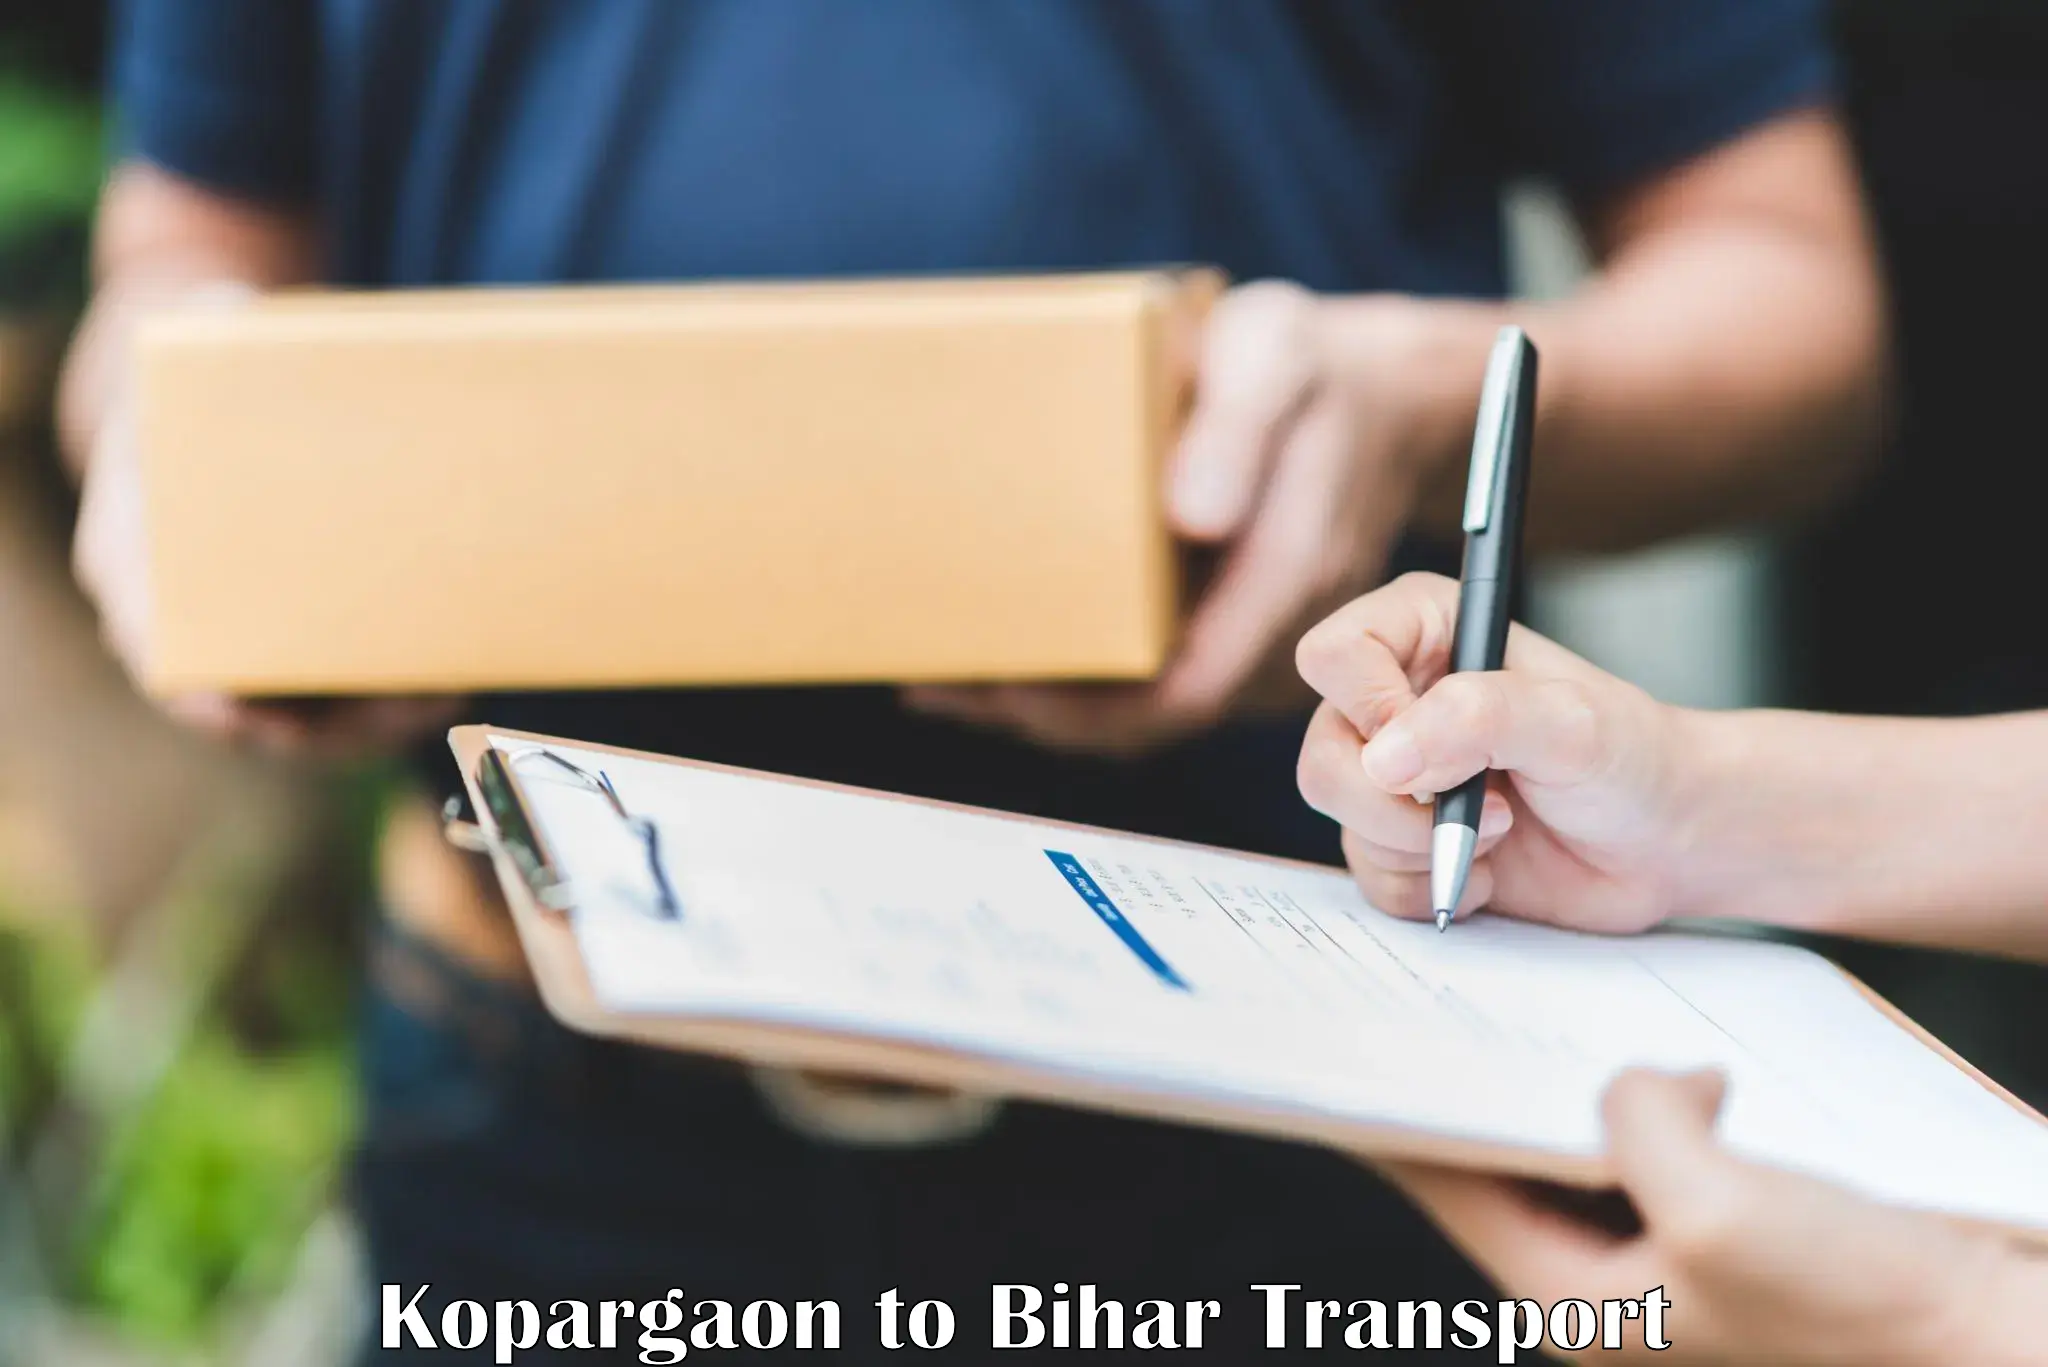 Nearest transport service Kopargaon to NIT Patna